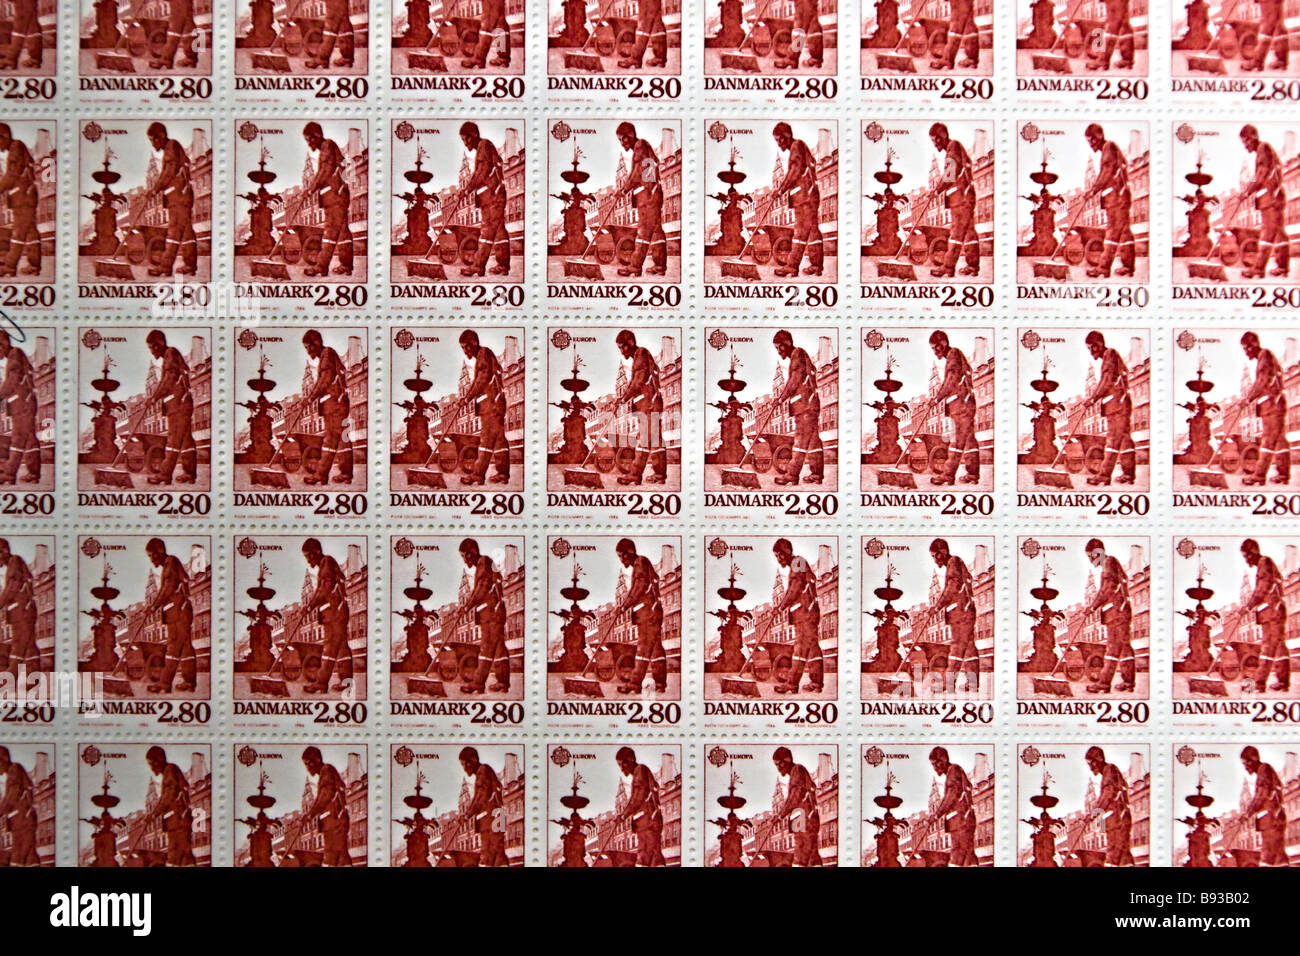 Alte dänische Briefmarkenbogen mit einem Weg-Kehrmaschine-Thema Stockfoto